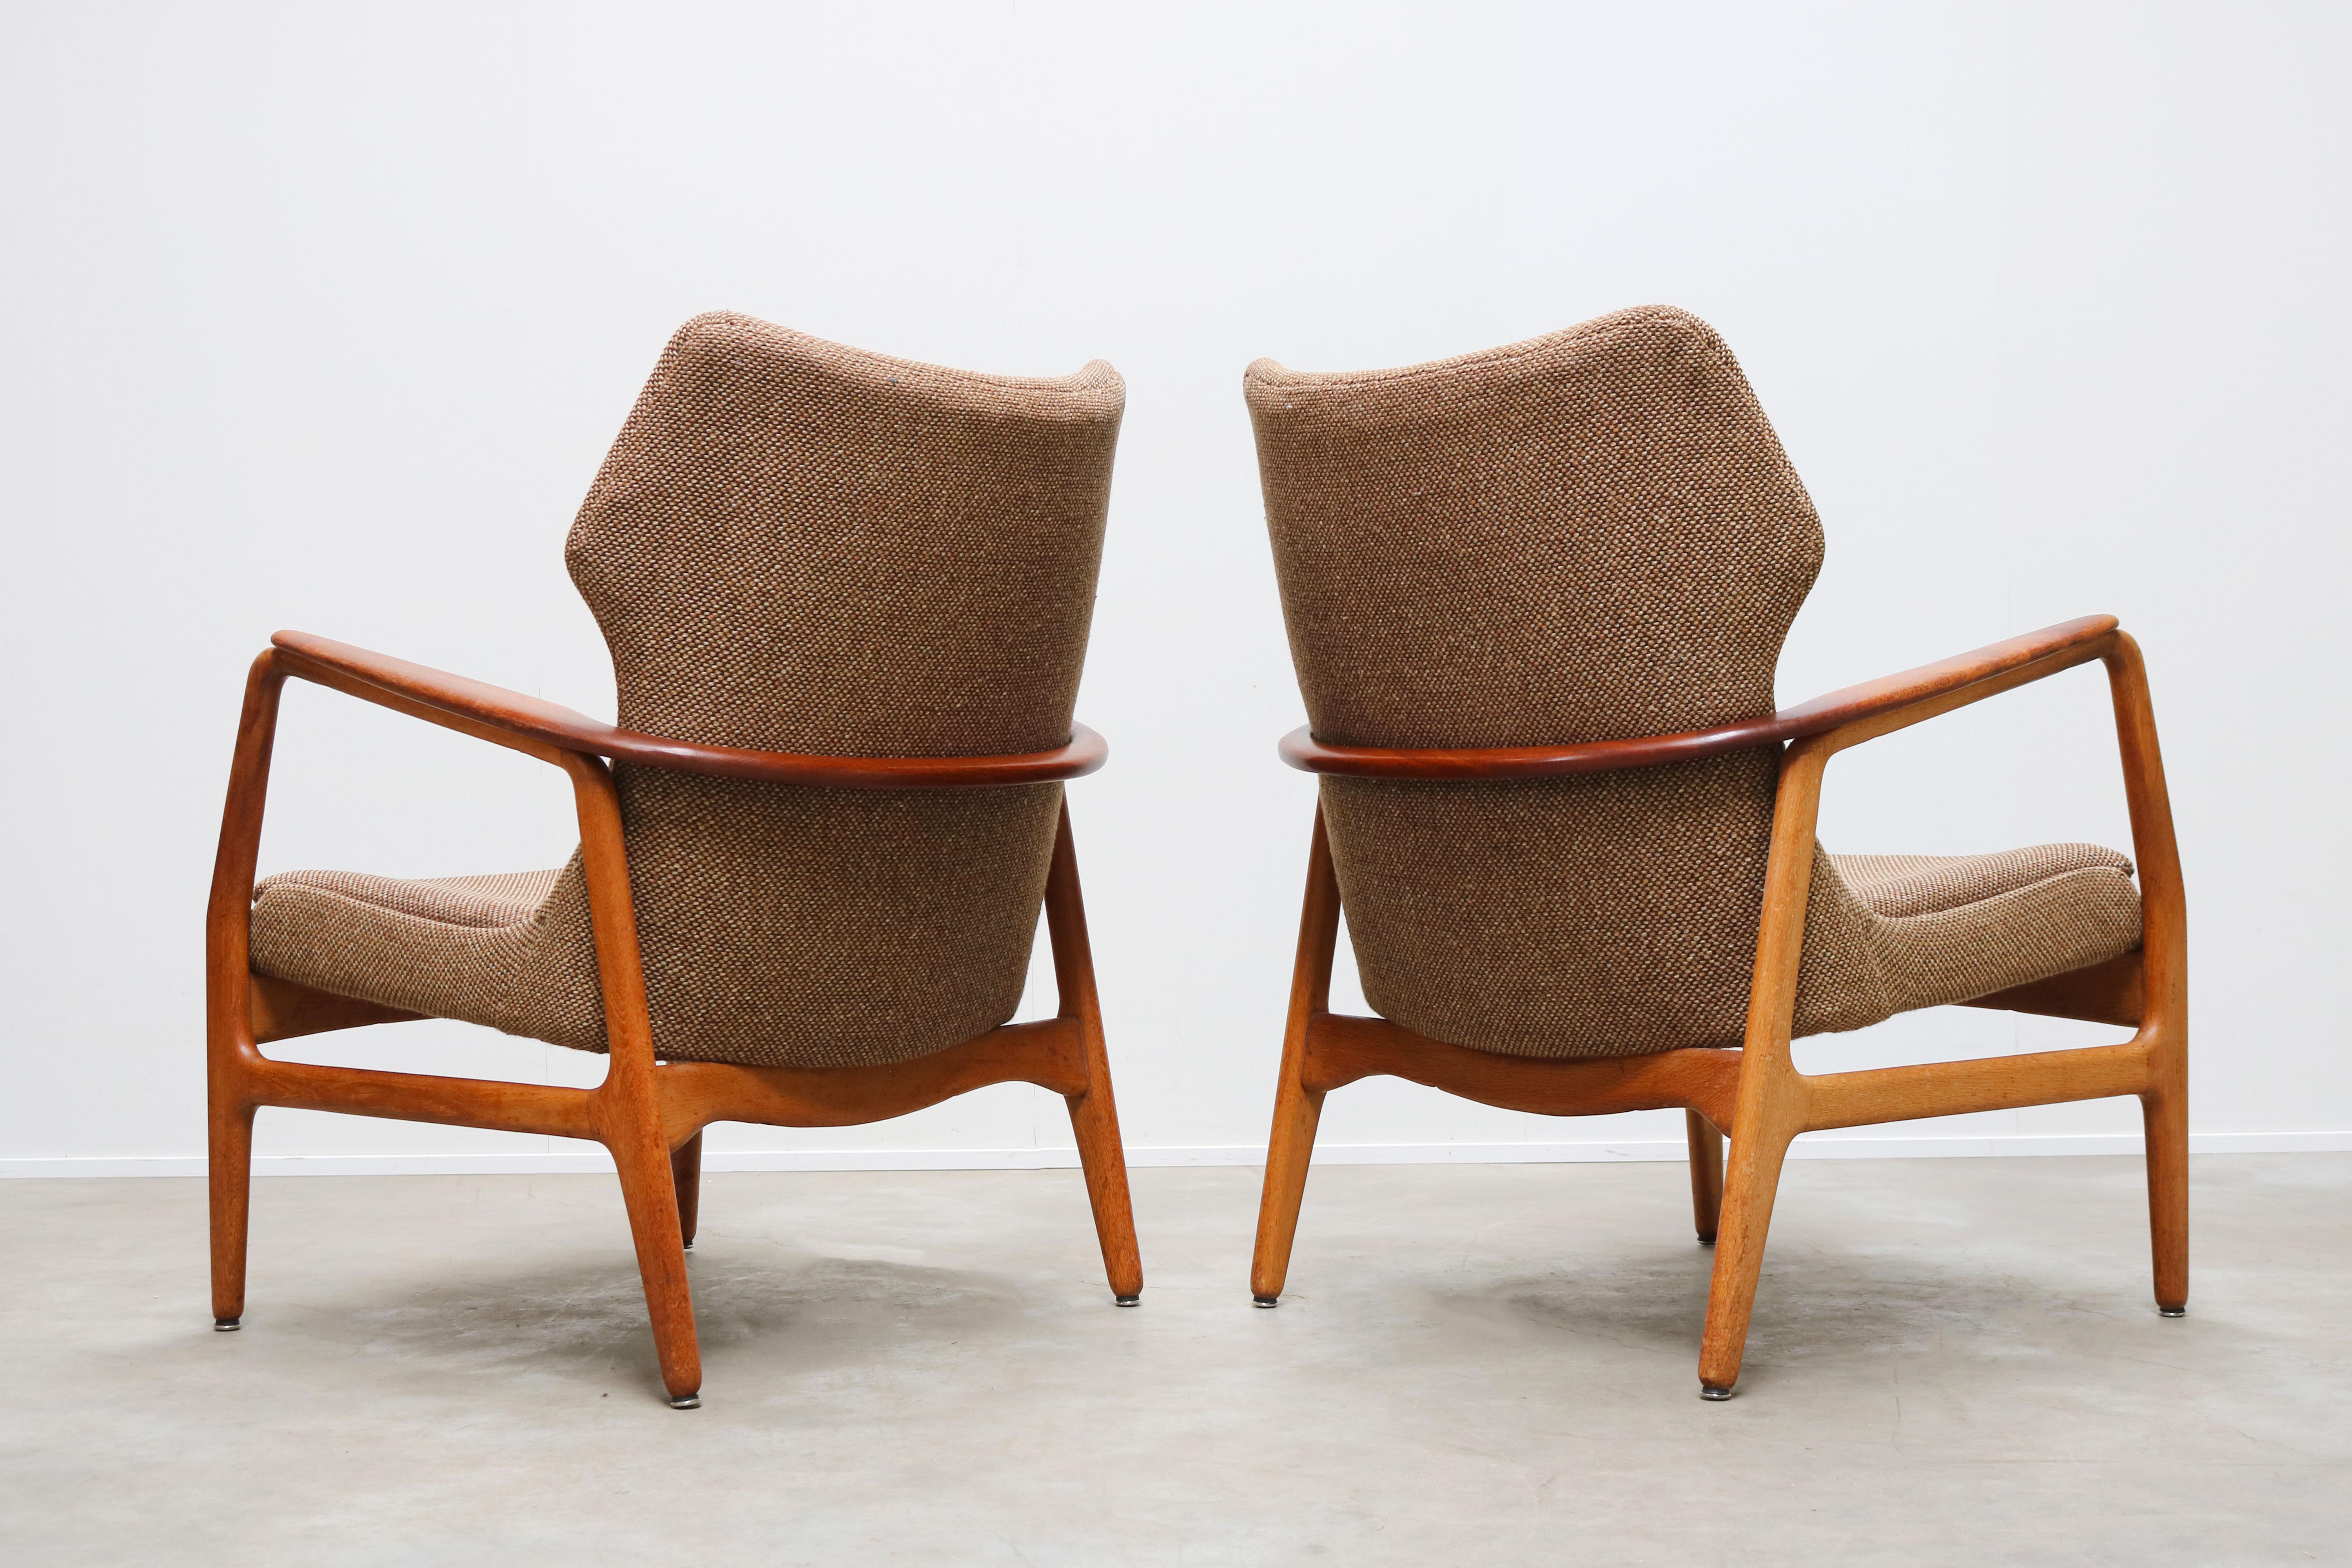 Dutch Pair of Danish Lounge Chairs by Aksel Bender Madsen 1952 Bovenkamp Teak Brown